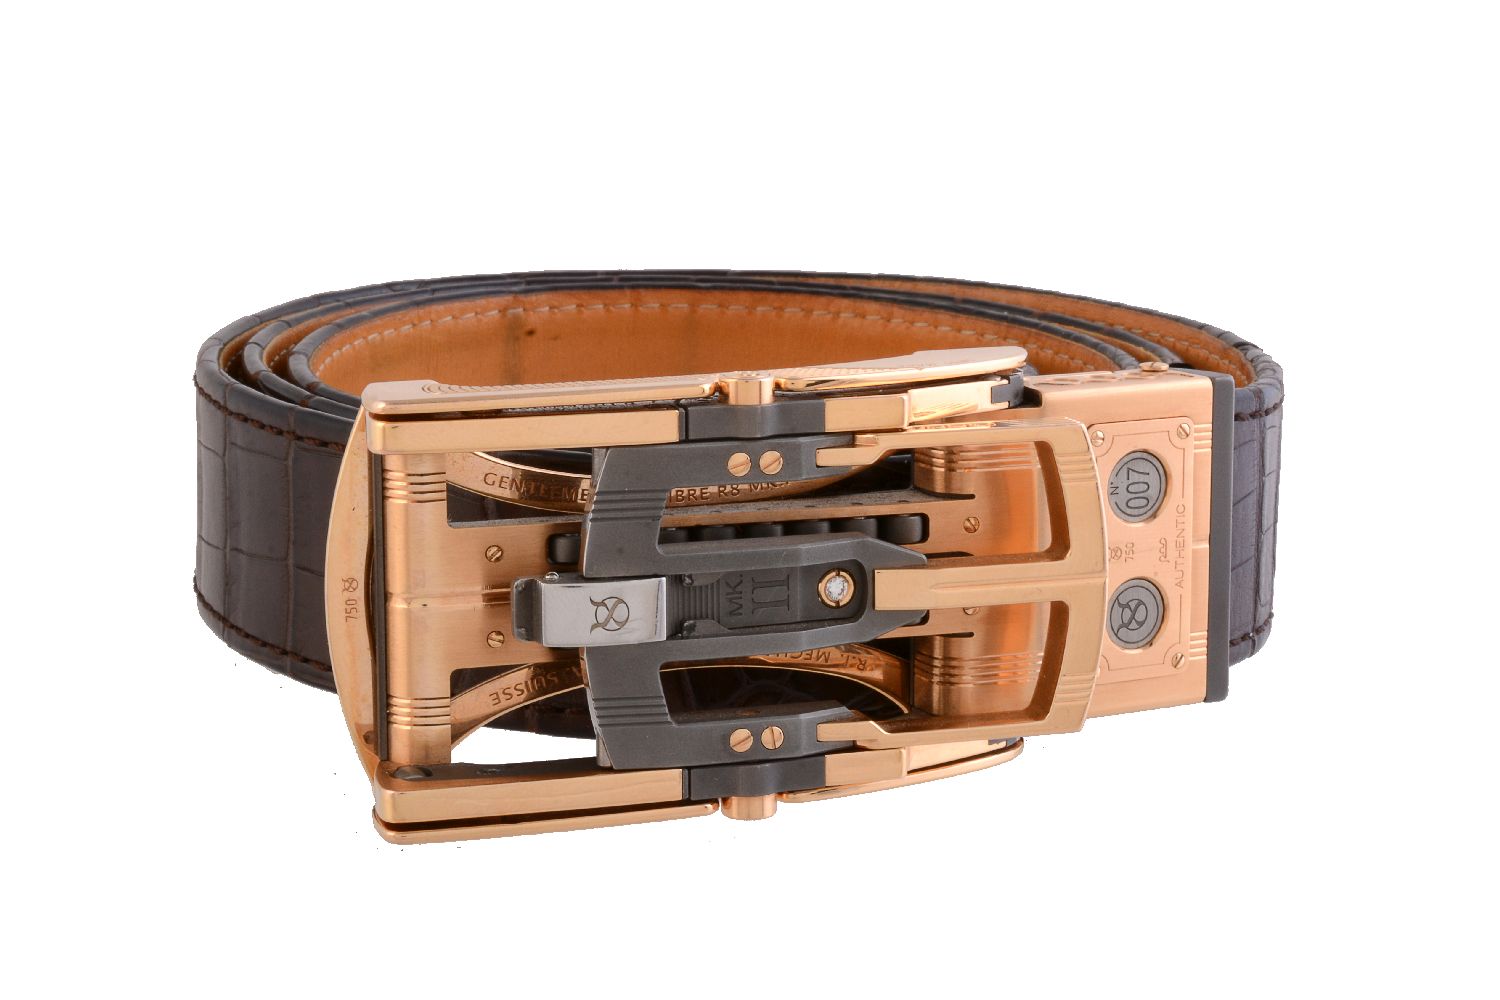 ϒ Roland Iten, Calibre R8 Mk II, a gold coloured, steel, titanium and diamond belt buckle